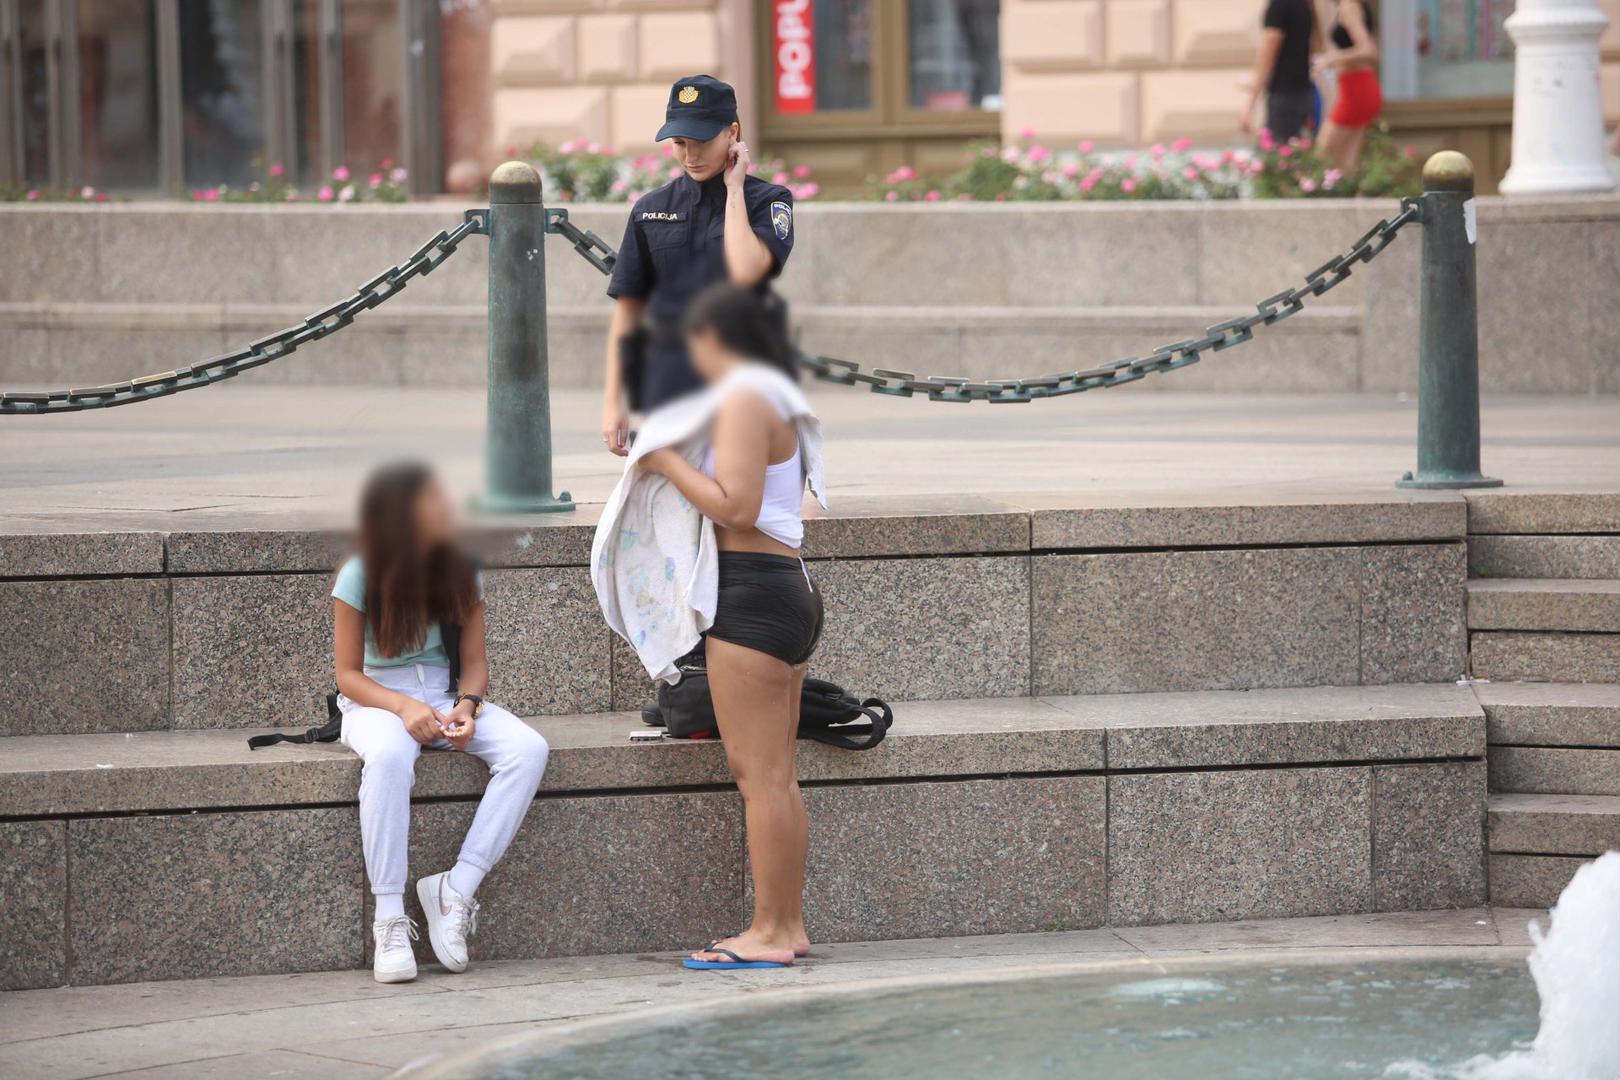 Jedna se djevojka odlučila jučer osvježiti u fontani Manduševac na Trgu bana Jelačića, no zabavu je brzo prekinula policajka. 